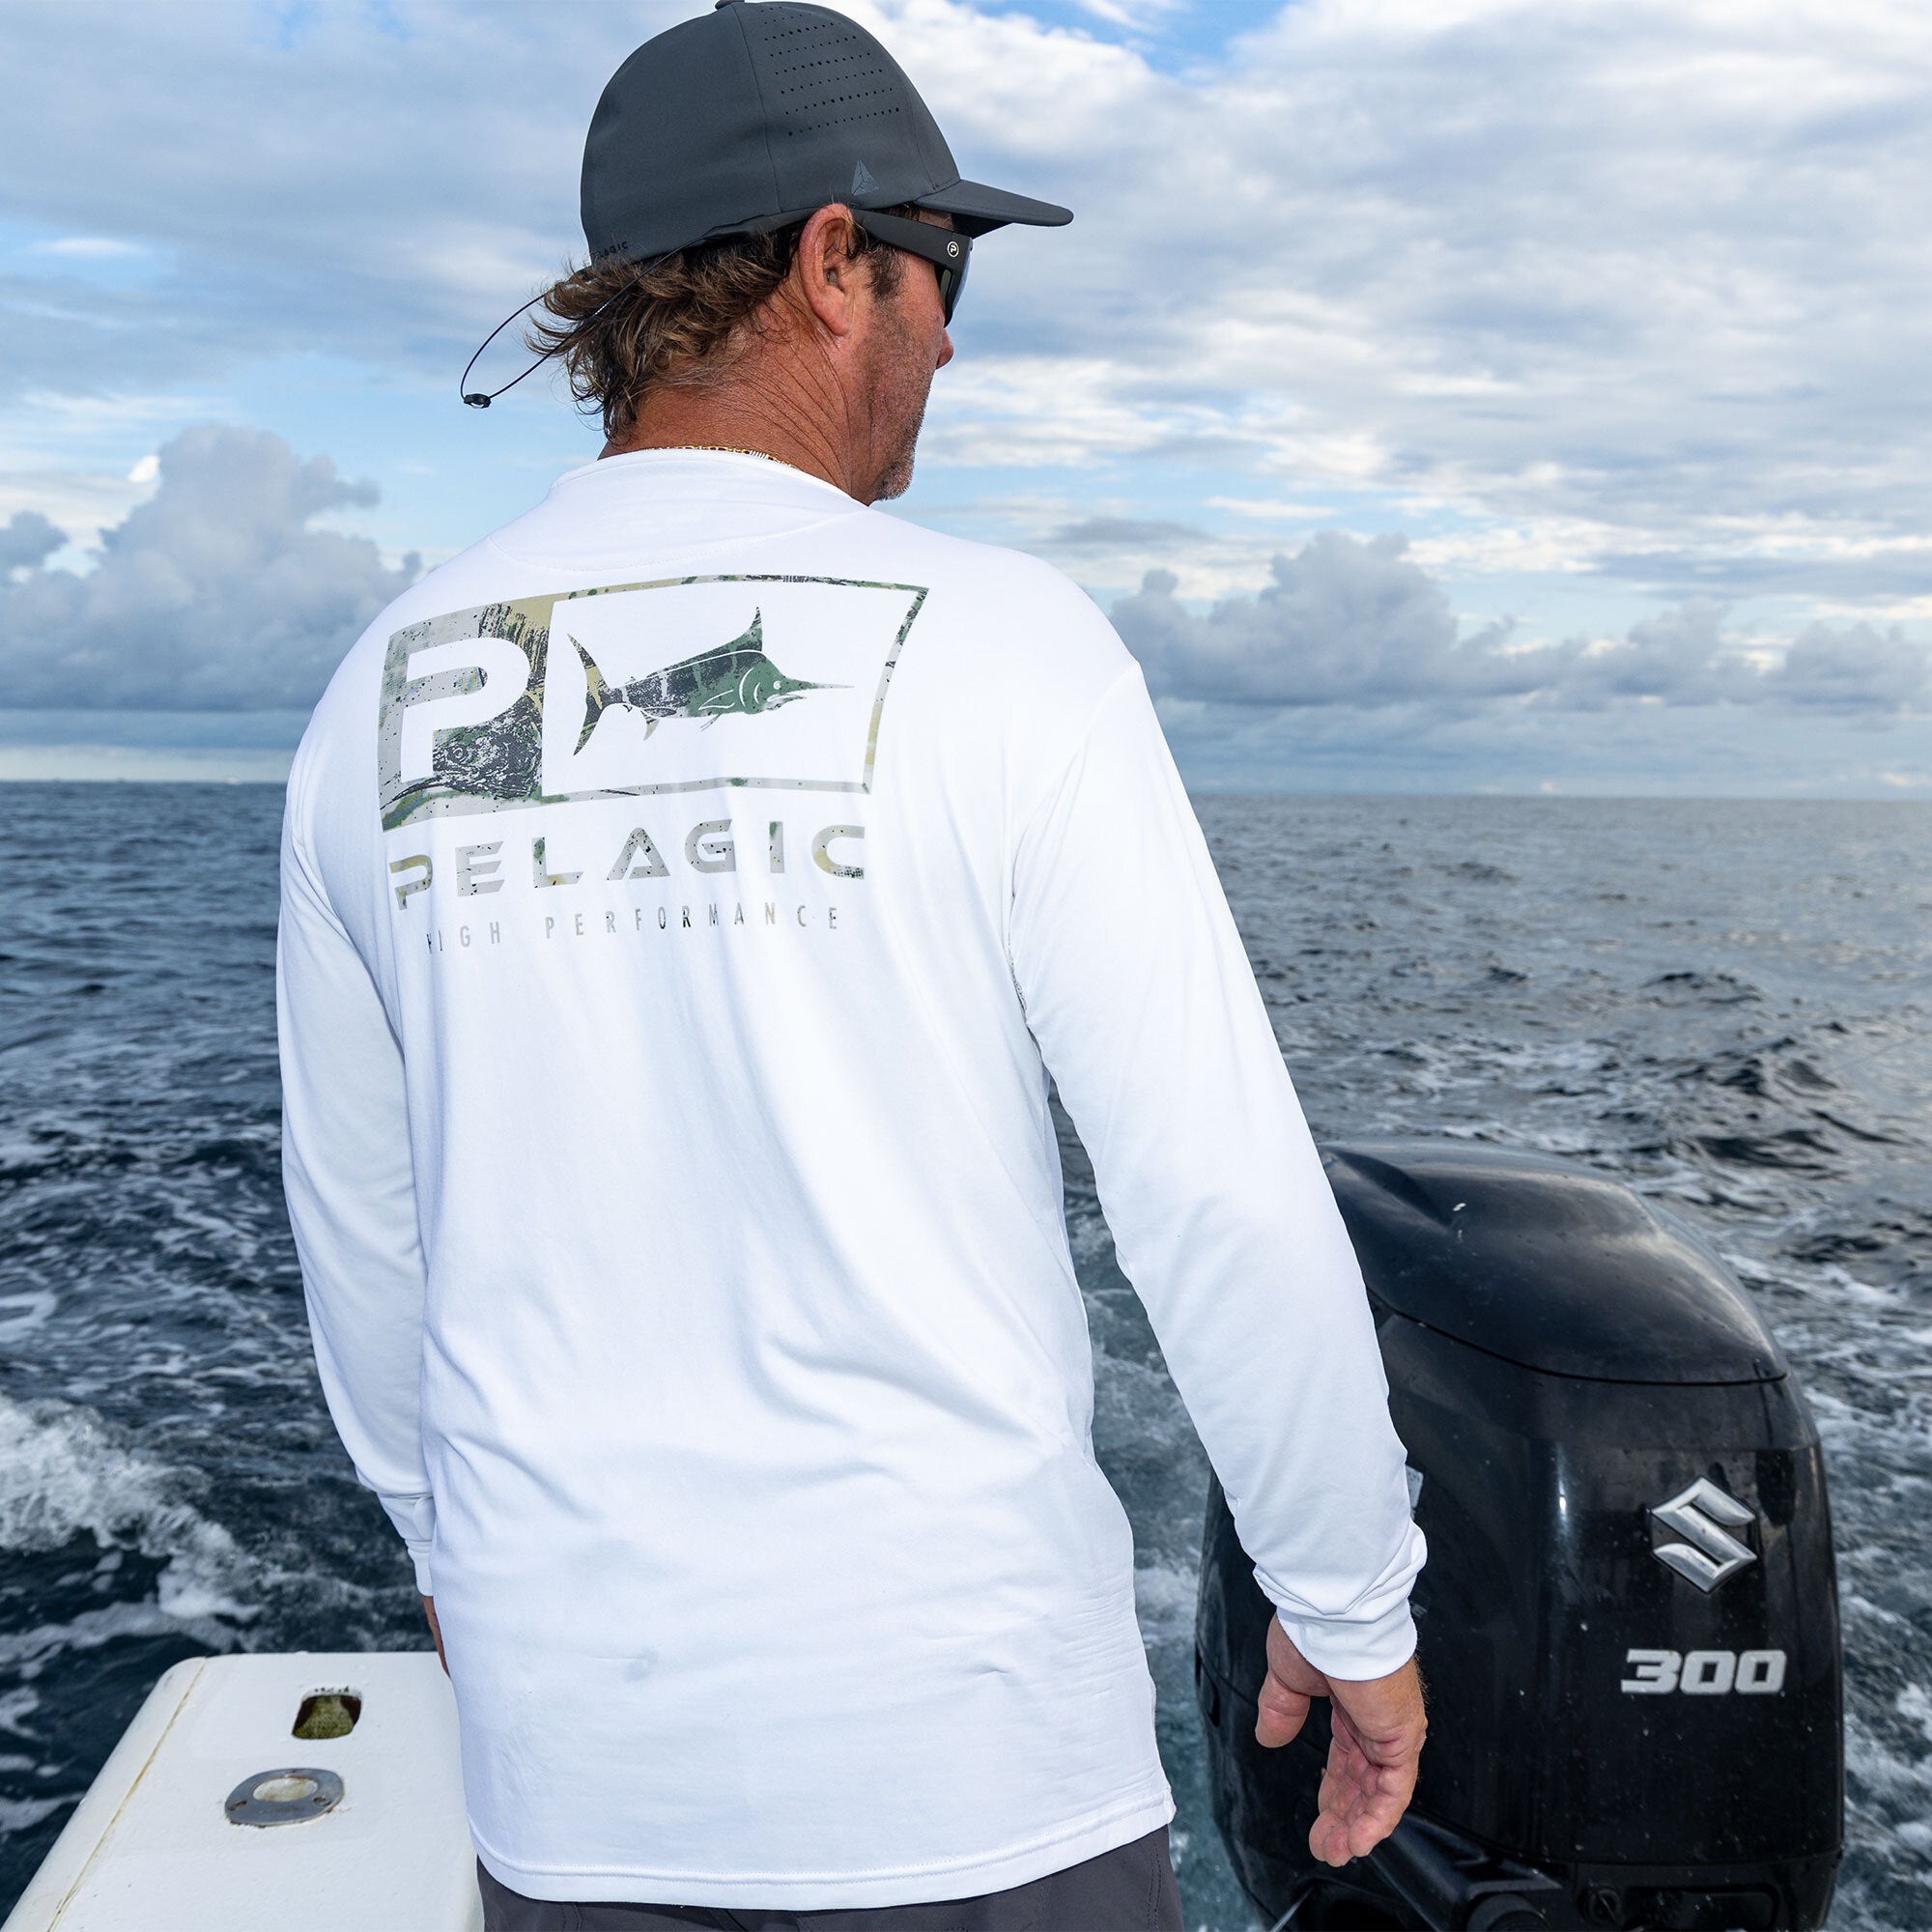 Pelagic Defcon Icon Hooded Fishing Shirt Slate / S